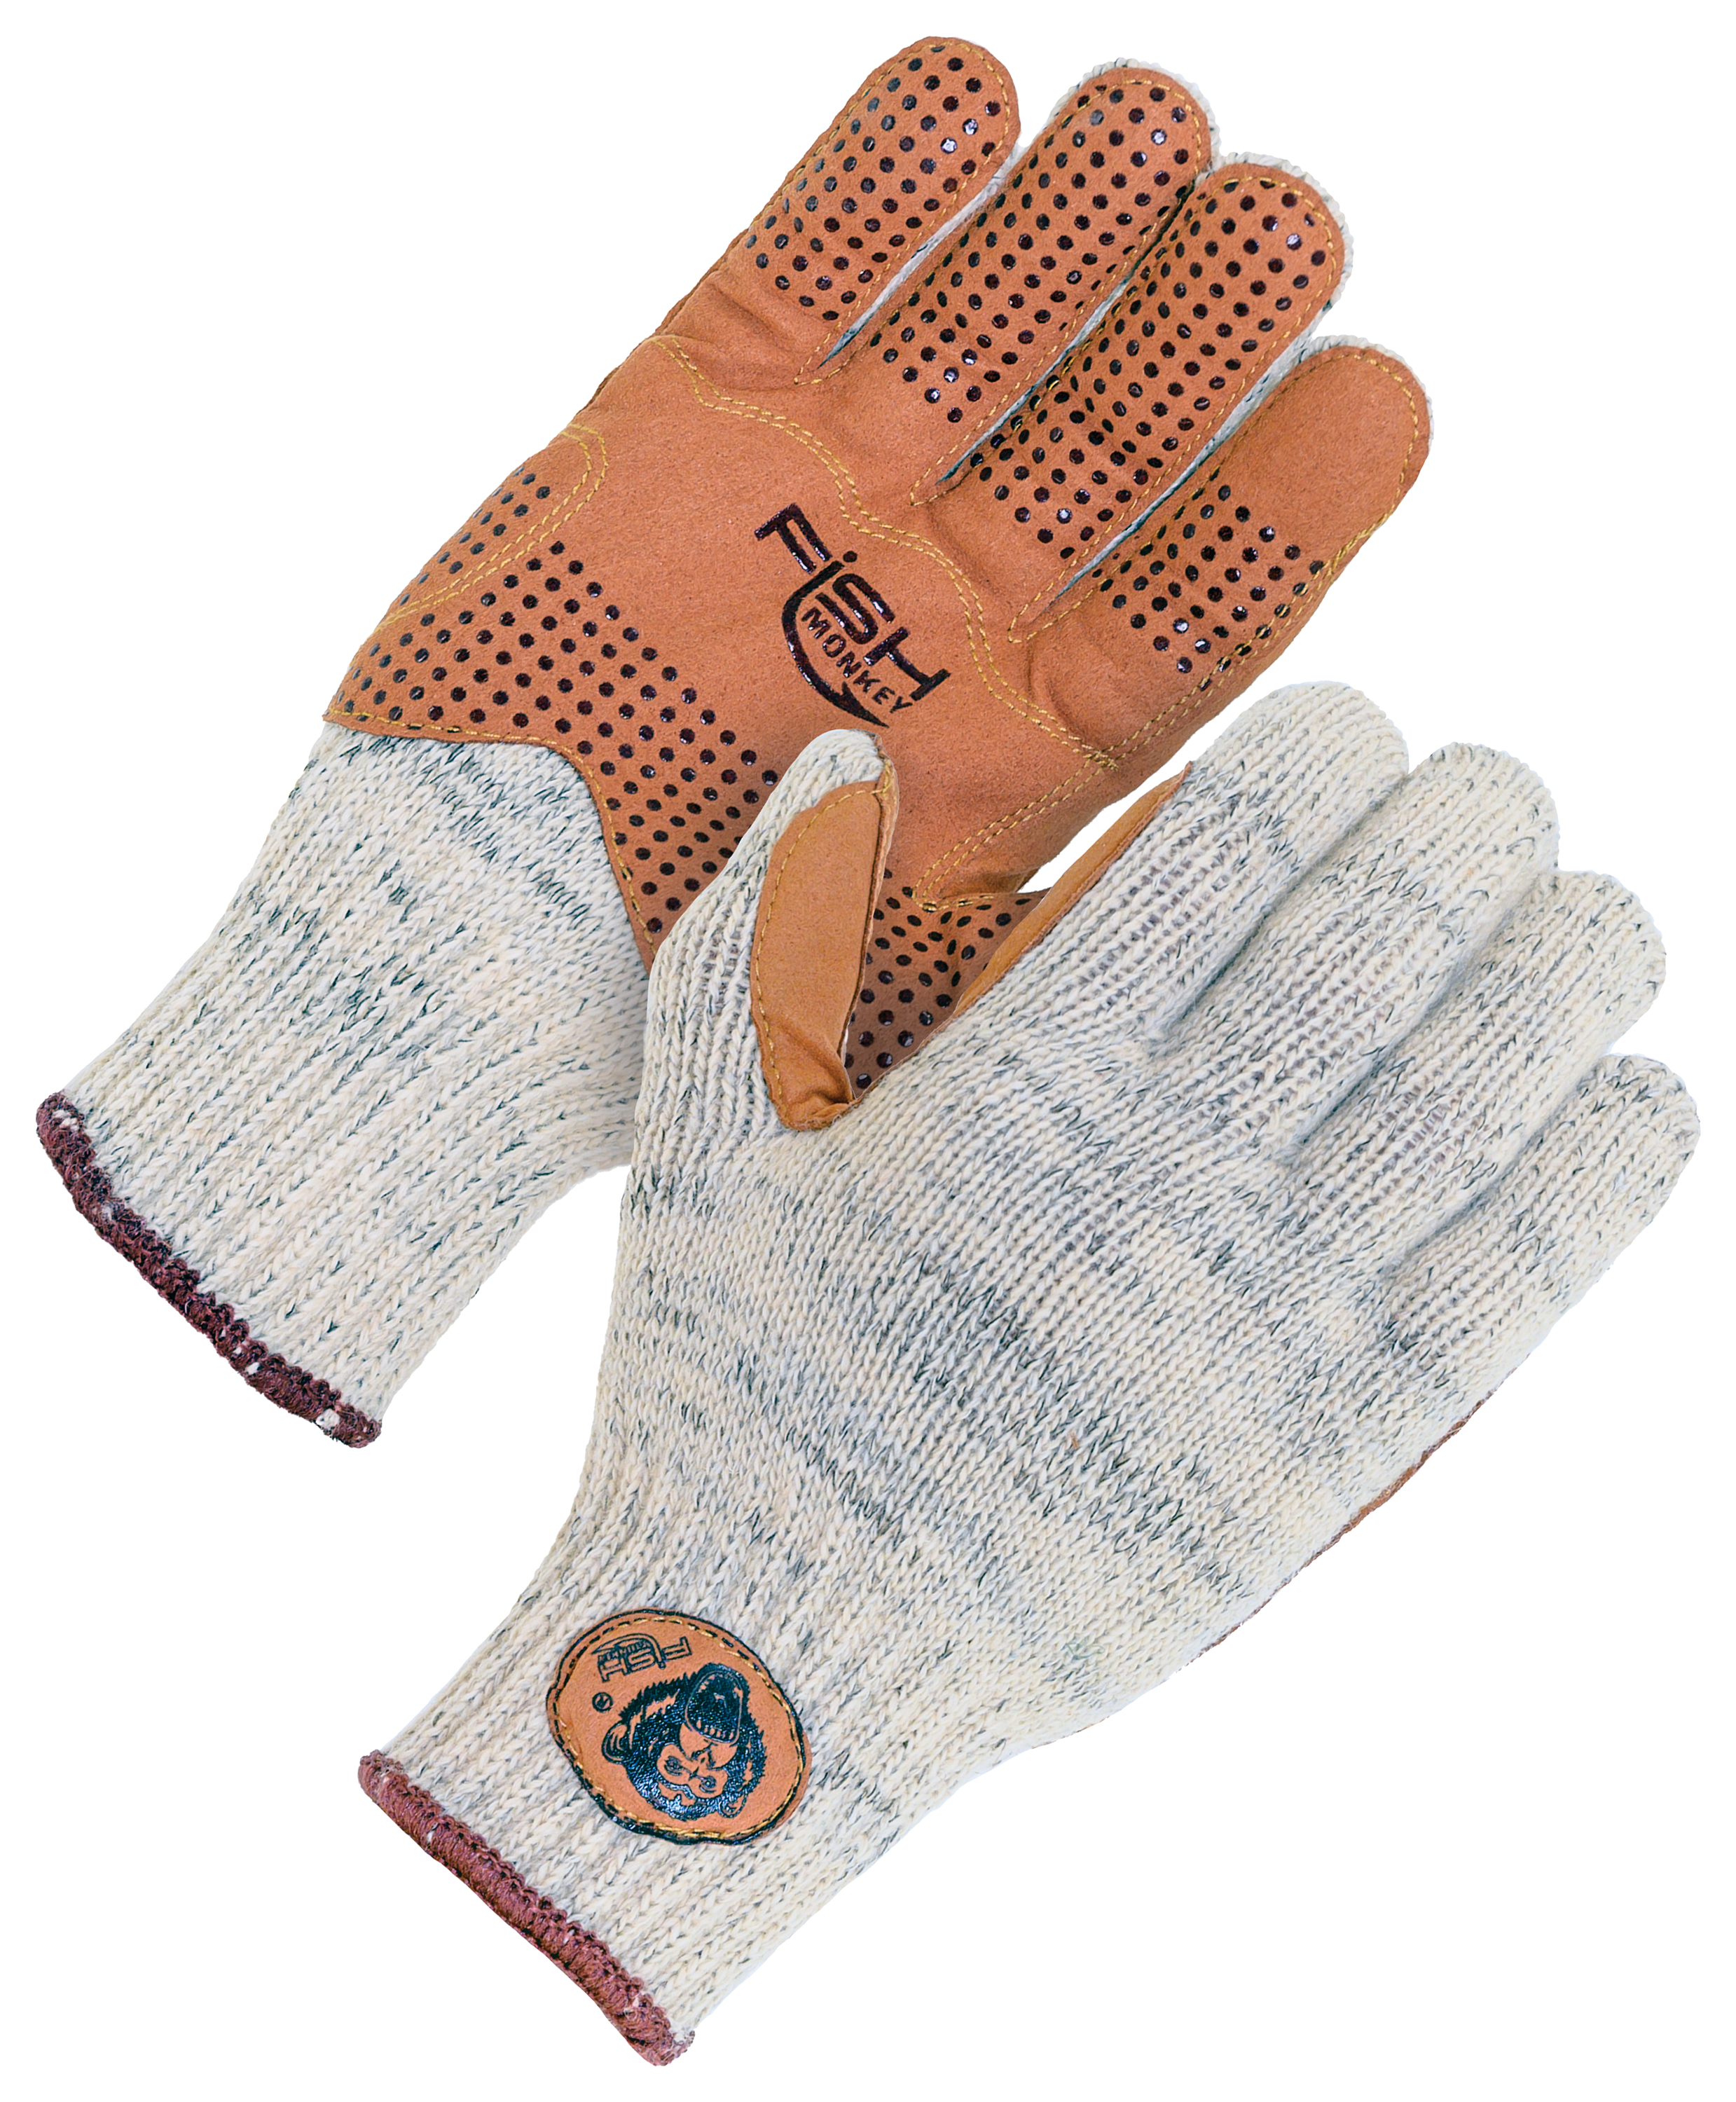 Fish Monkey Wooly Full-Finger Wool Fishing Gloves for Men